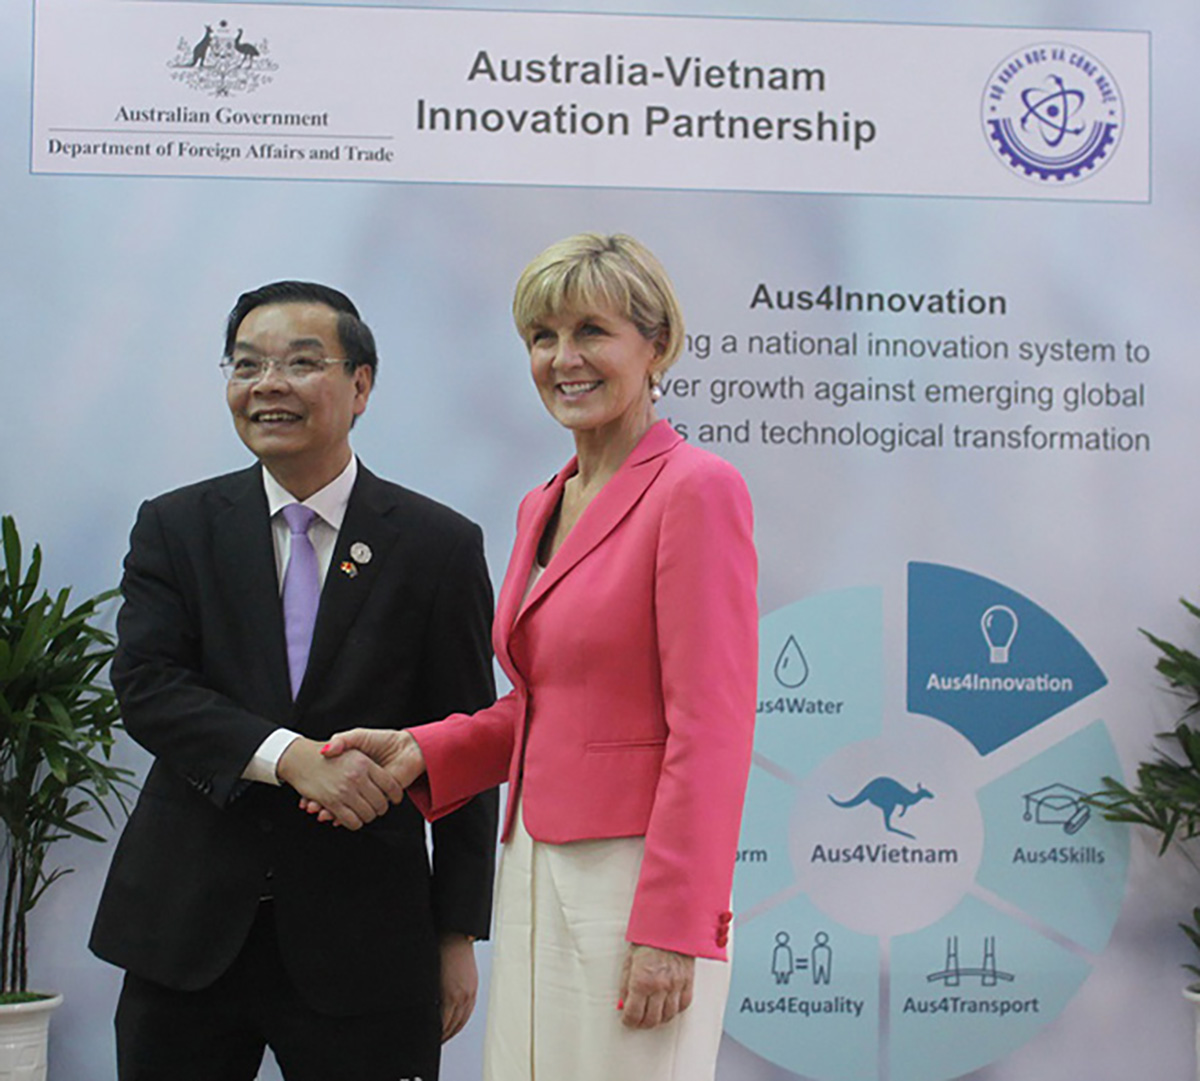 Cựu Bộ trưởng Bộ Ngoại giao và Thương mại Úc Julie Bishop và Bộ trưởng Bộ Khoa học và Công nghệ Việt Nam Chu Ngọc Anh công bố khởi động chương trình Aus4Innovation năm 2017 <br>trong tuần lễ hội nghị thượng đỉnh APEC tại Việt Nam